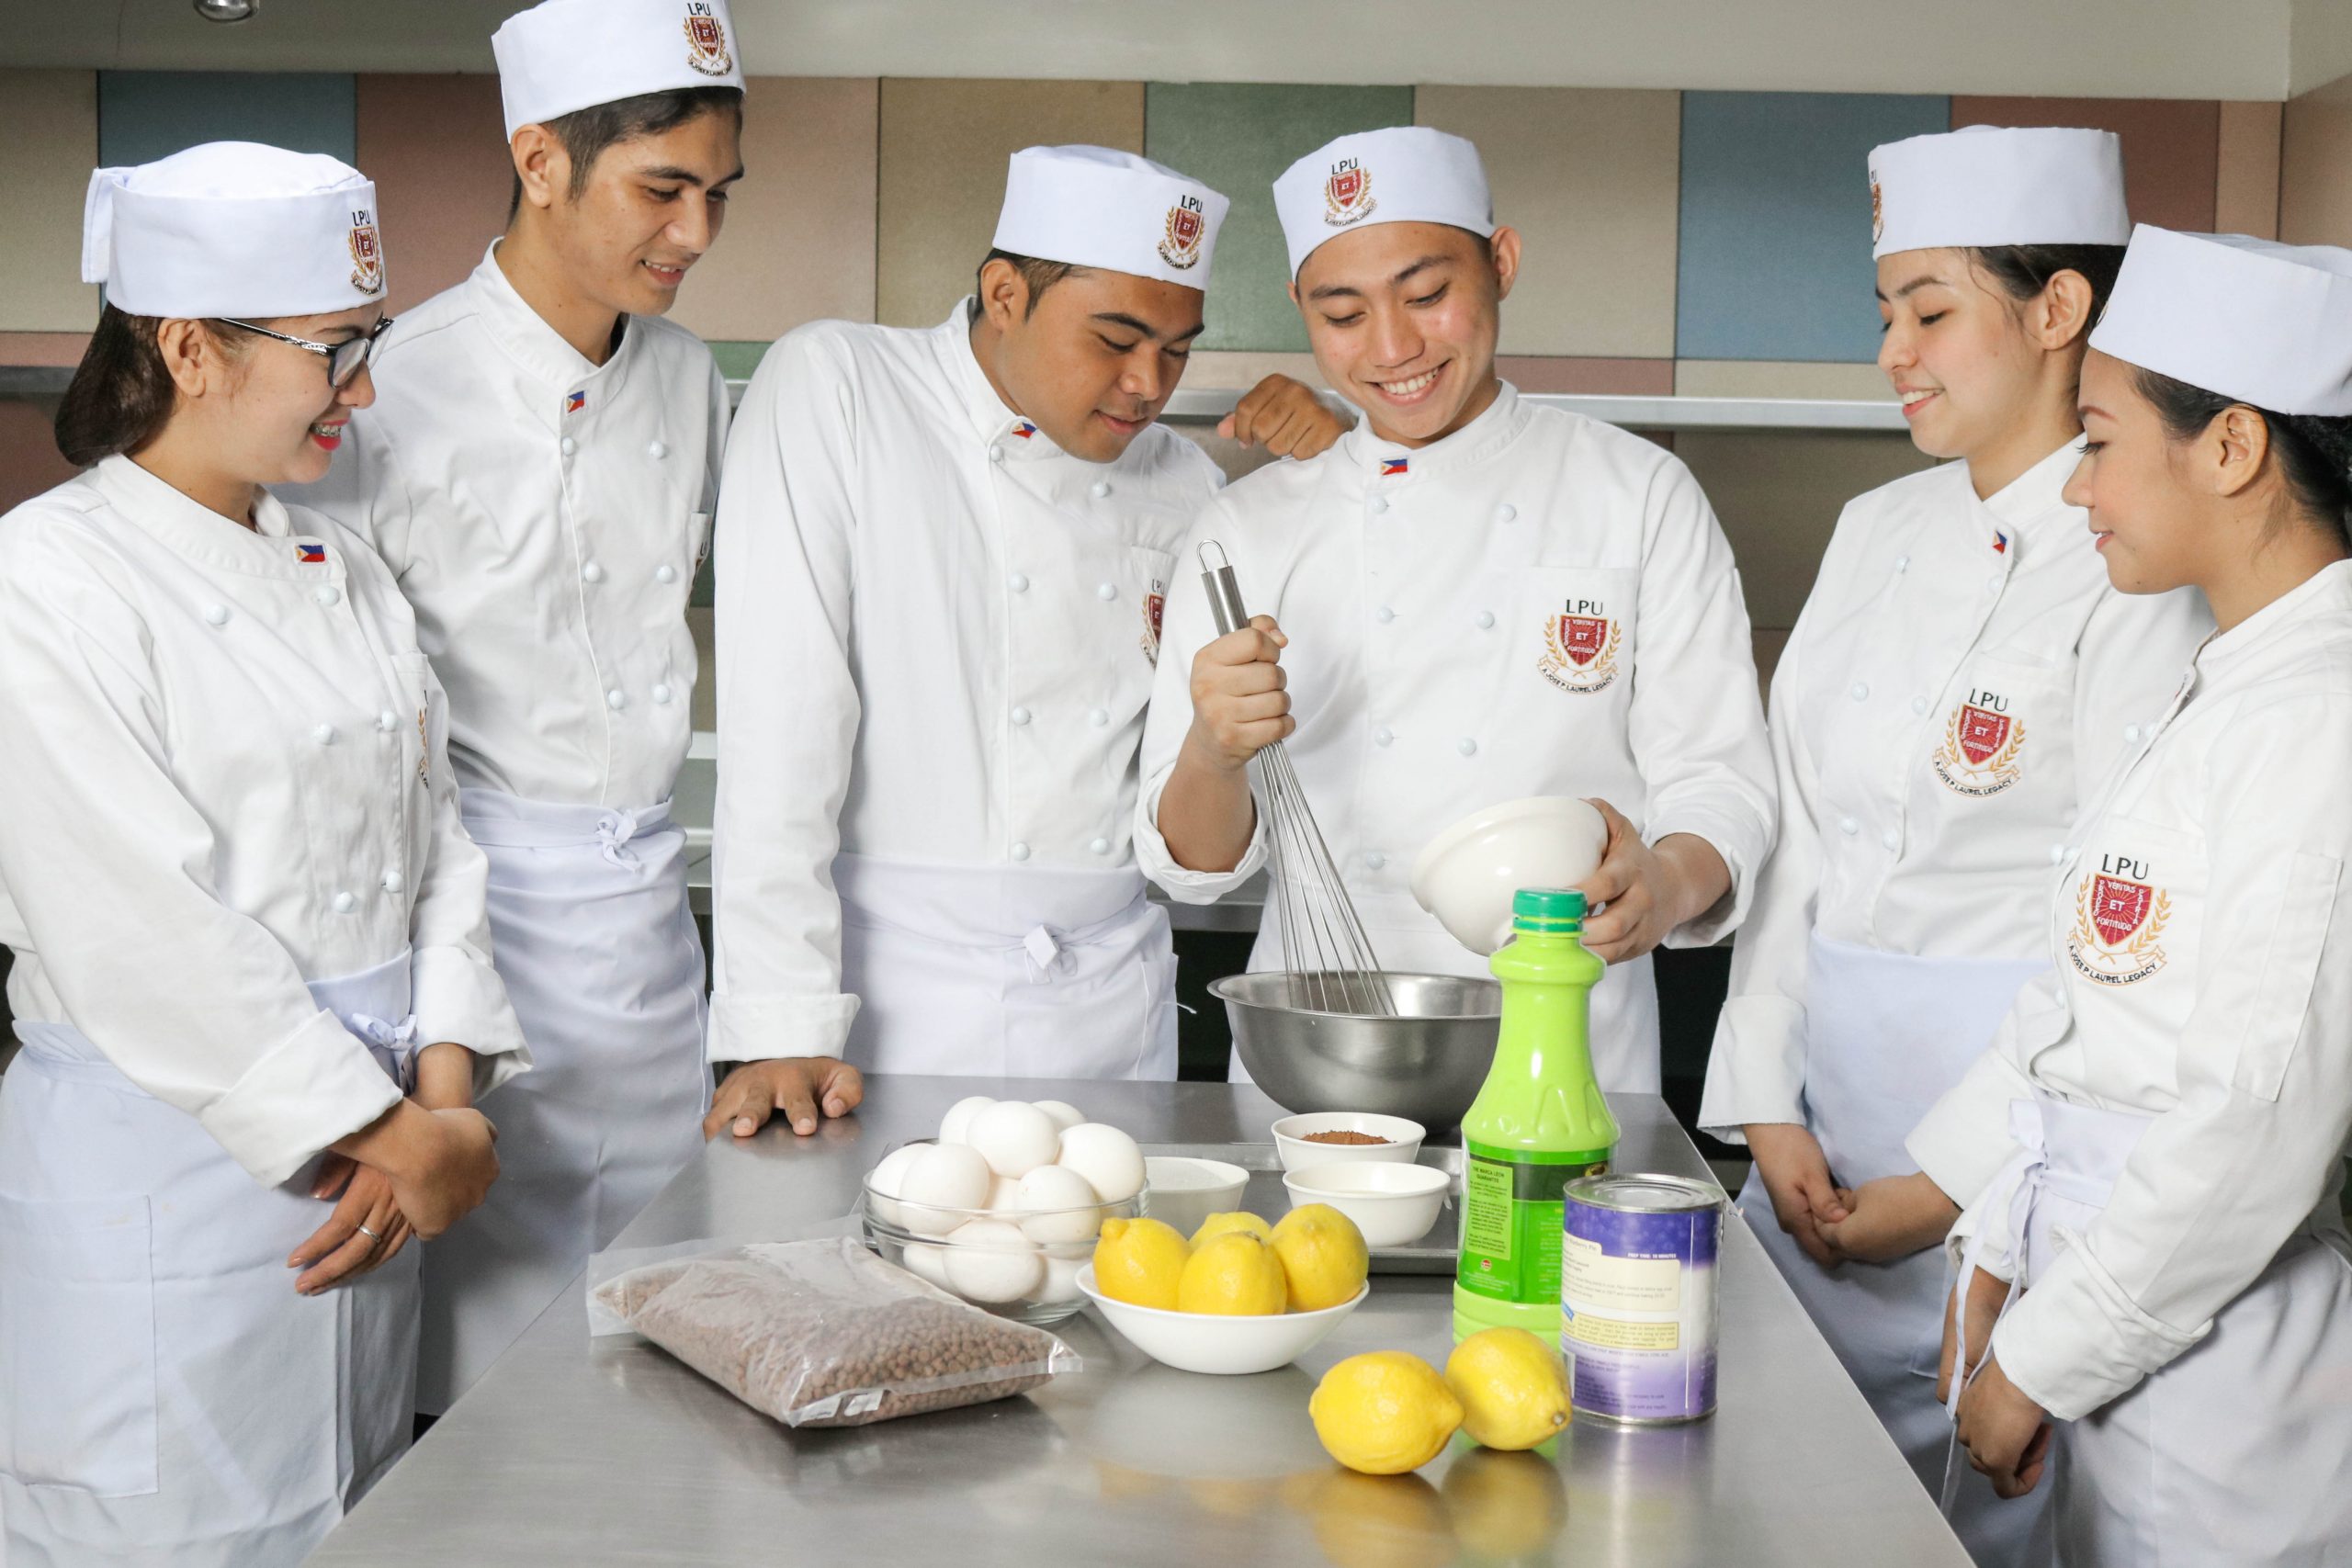 LPU Culinary Institute